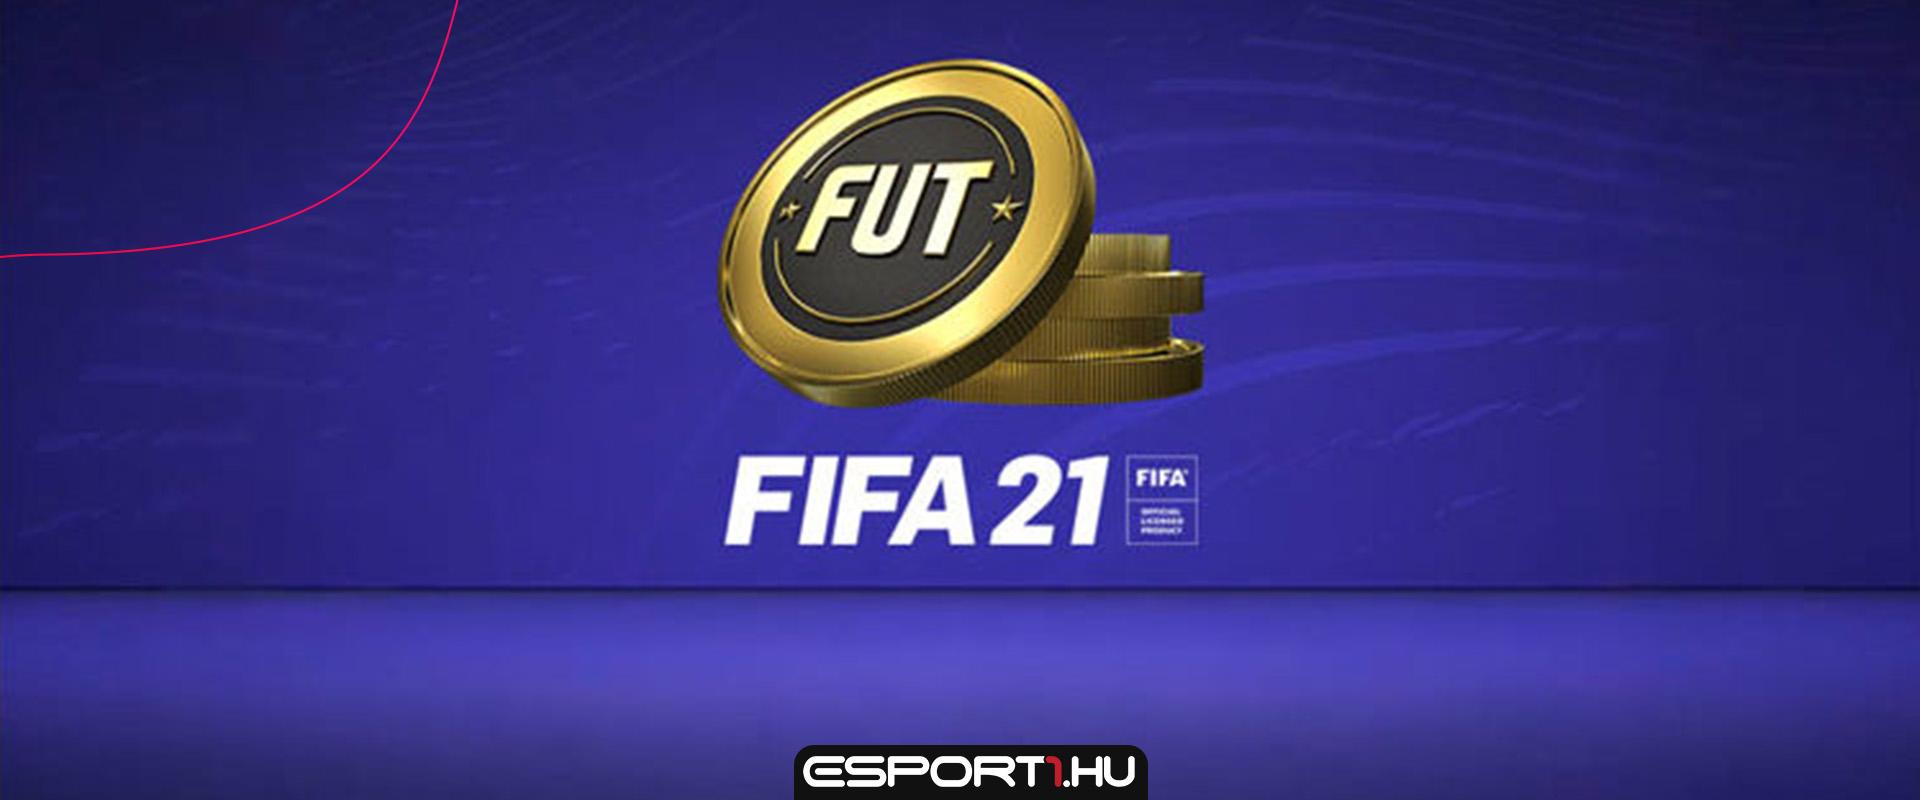 FIFA 21: Legrosszabb értékelés, mégis rekordbevételt termel